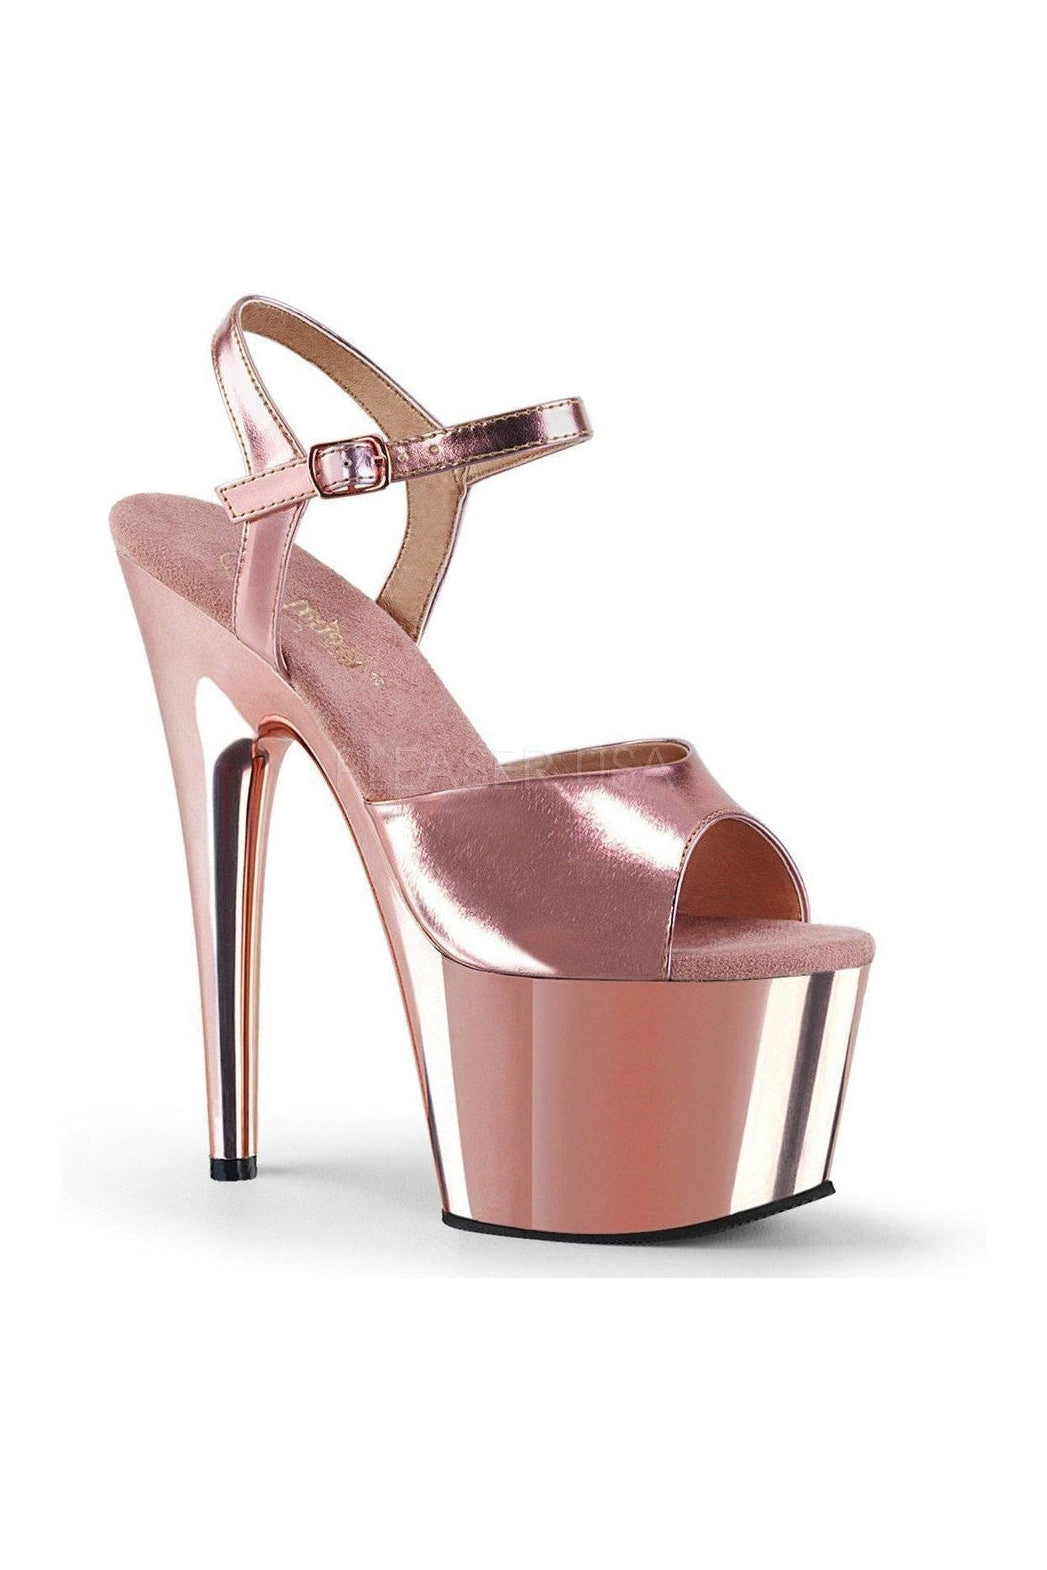 ADORE-709 Platform Sandal | Gold Faux Leather-Pleaser-Gold-Sandals-SEXYSHOES.COM